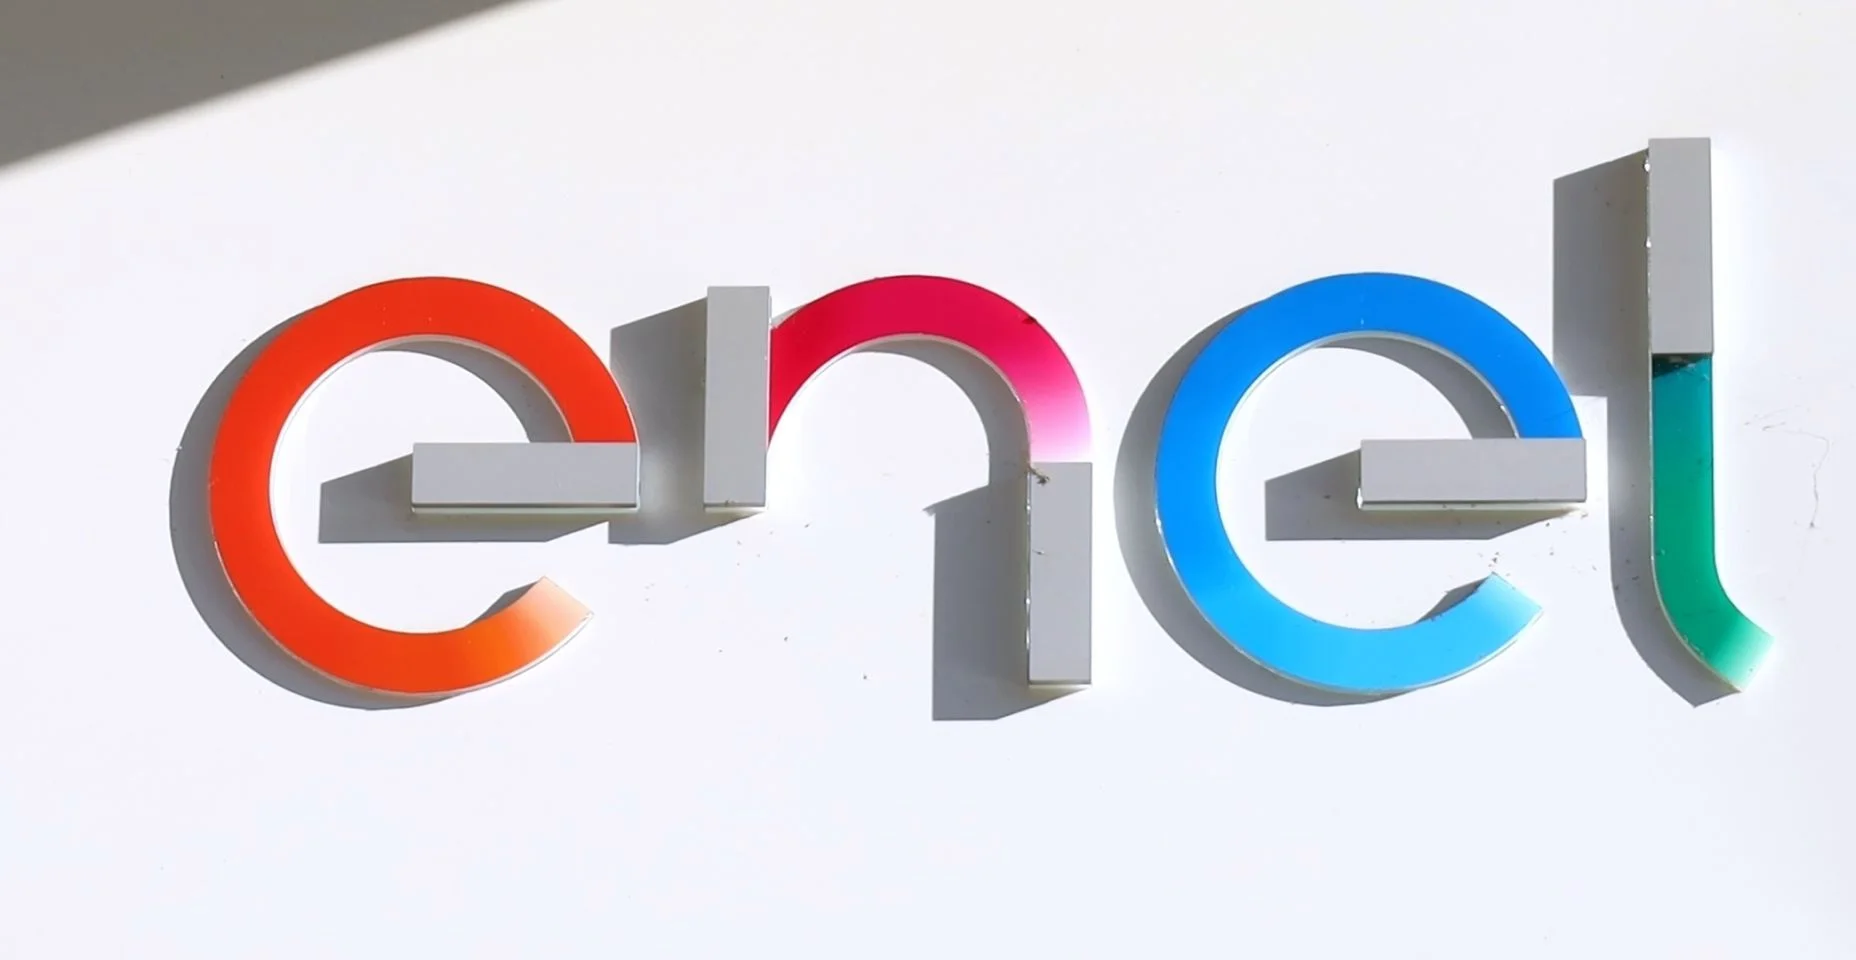 Logotipo da Enel na entrada de uma filial local. É o símbolo de uma multinacional italiana fabricante e distribuidora de eletricidade e gás, outrora órgão público.